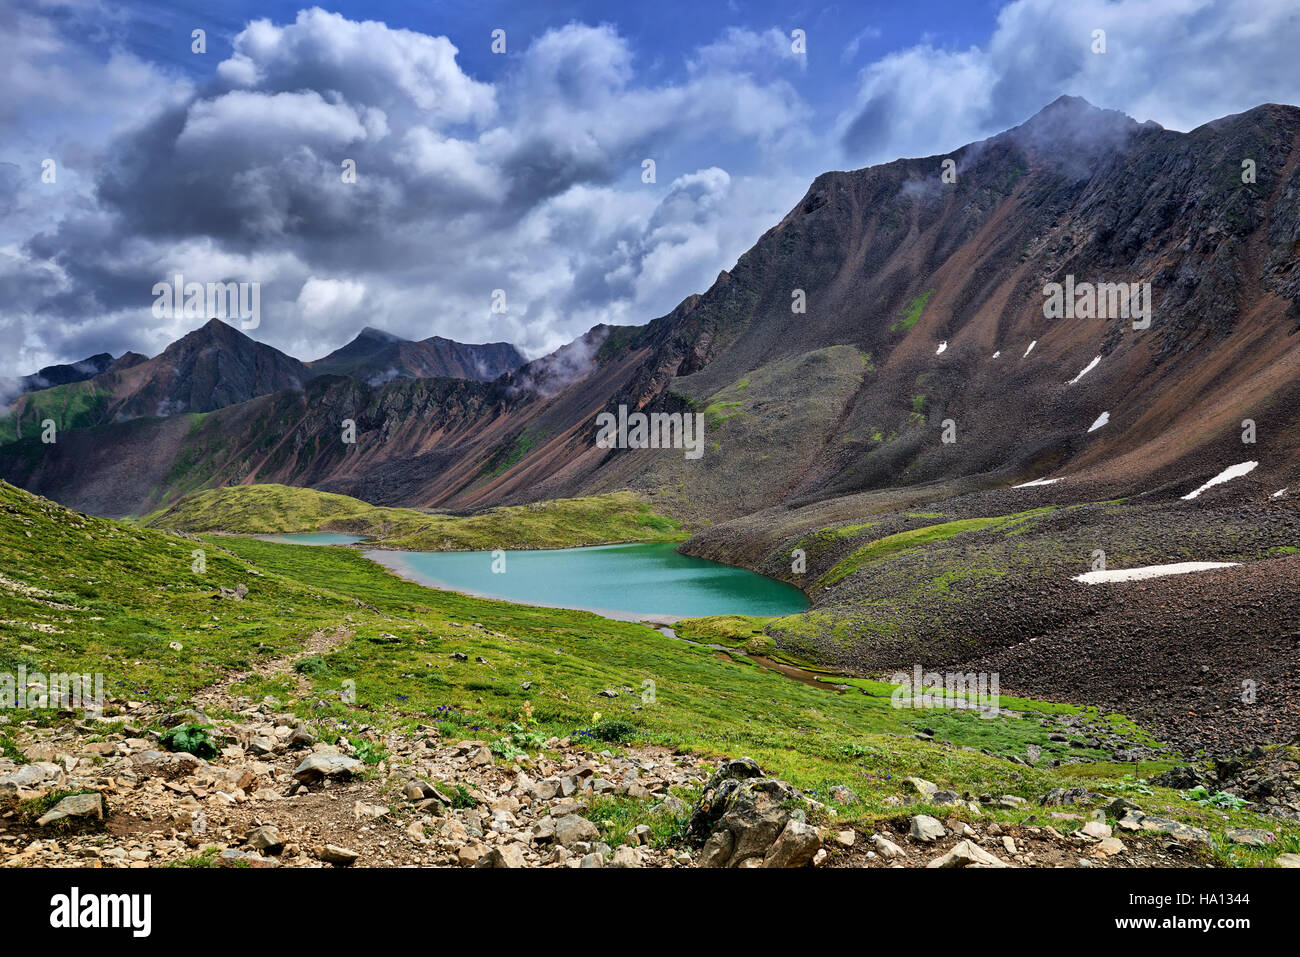 Magnifique lac de toundra de la Sibérie orientale. Sayan. La Russie Banque D'Images